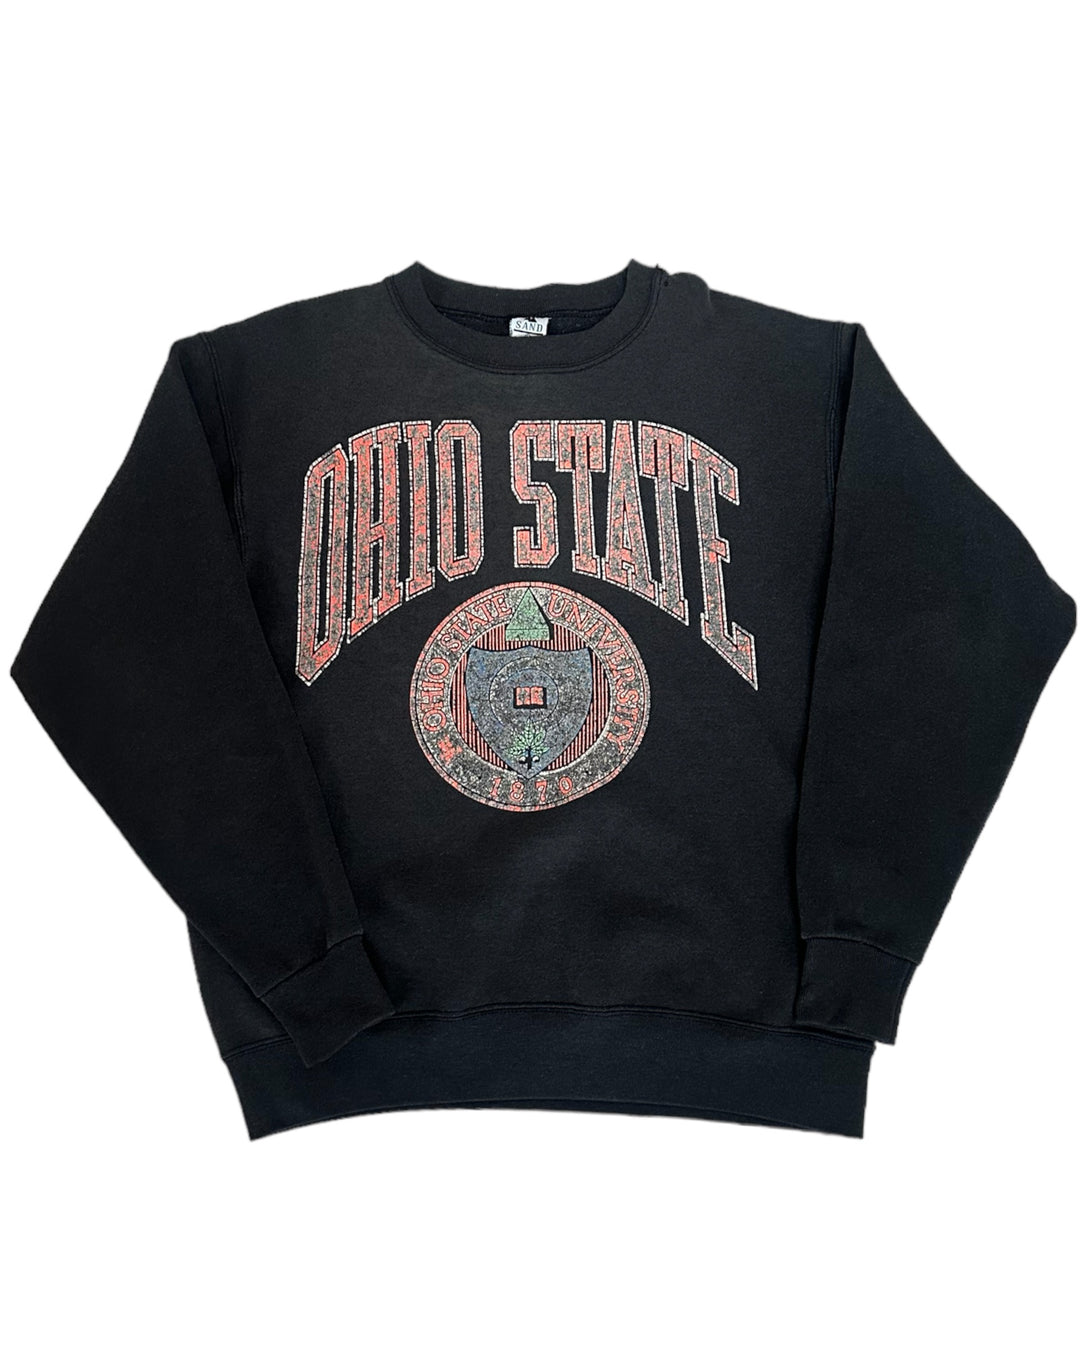 Ohio State Vintage Sweatshirt